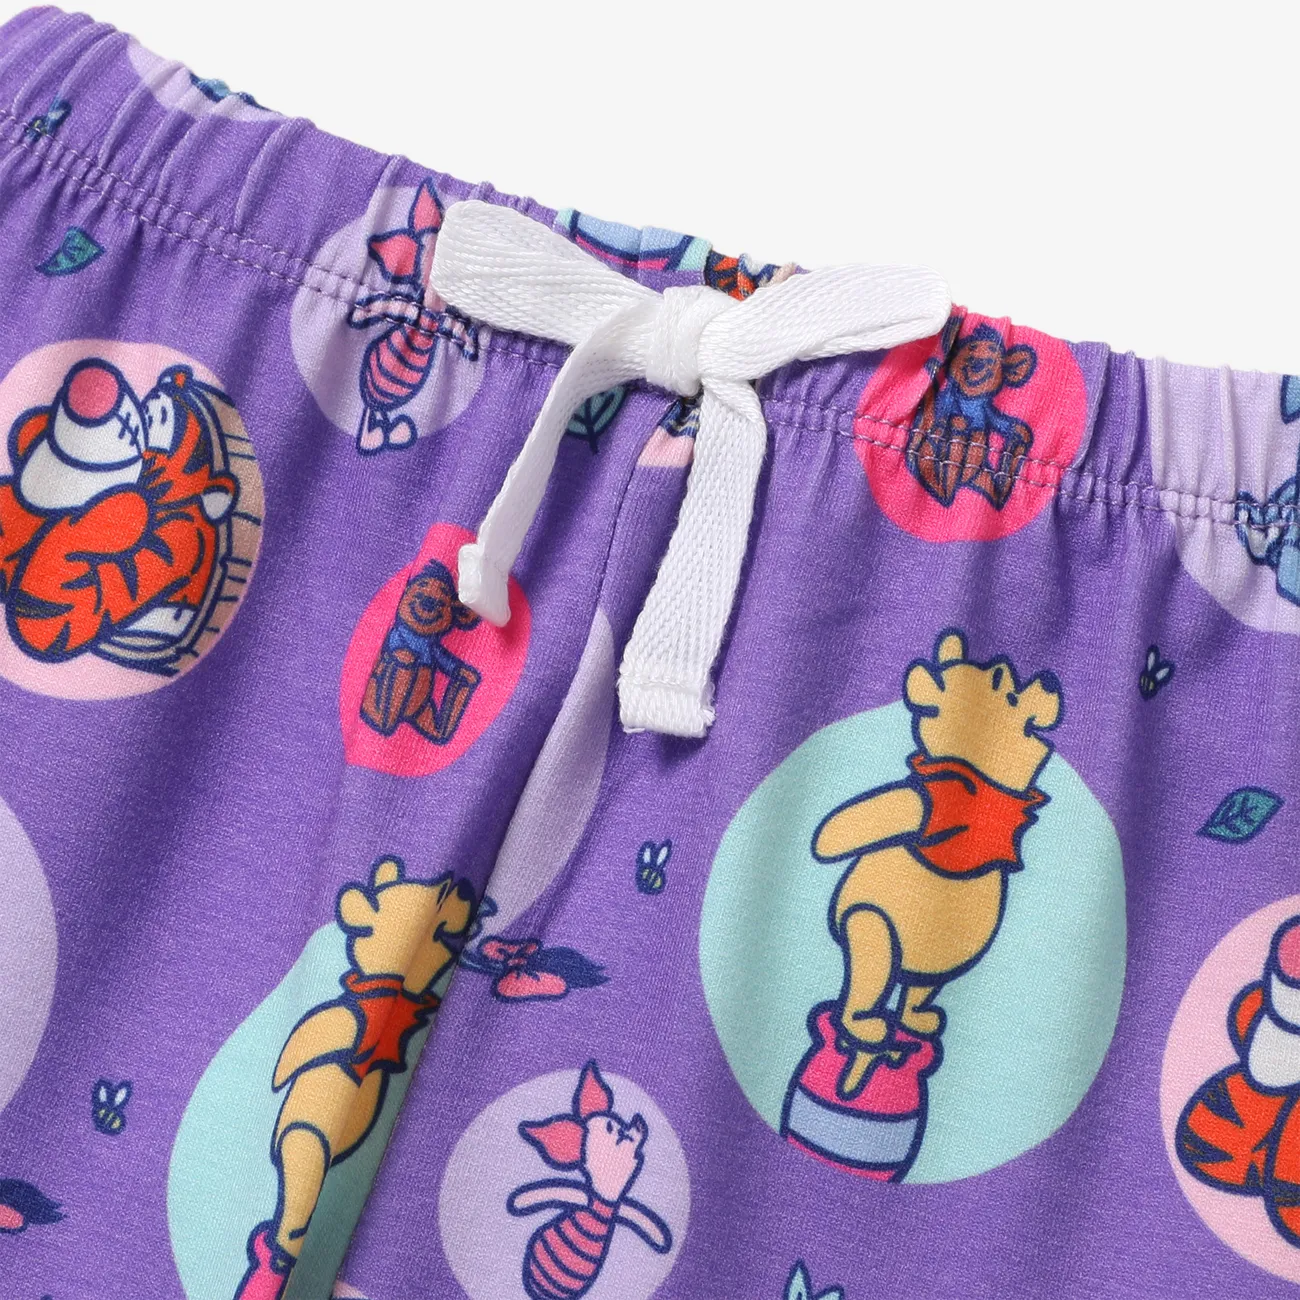 Disney Winnie the Pooh Baby/Toddler Girl/Boy 2pcs Character Naia™ Print Tee and Pants Set Roseo big image 1